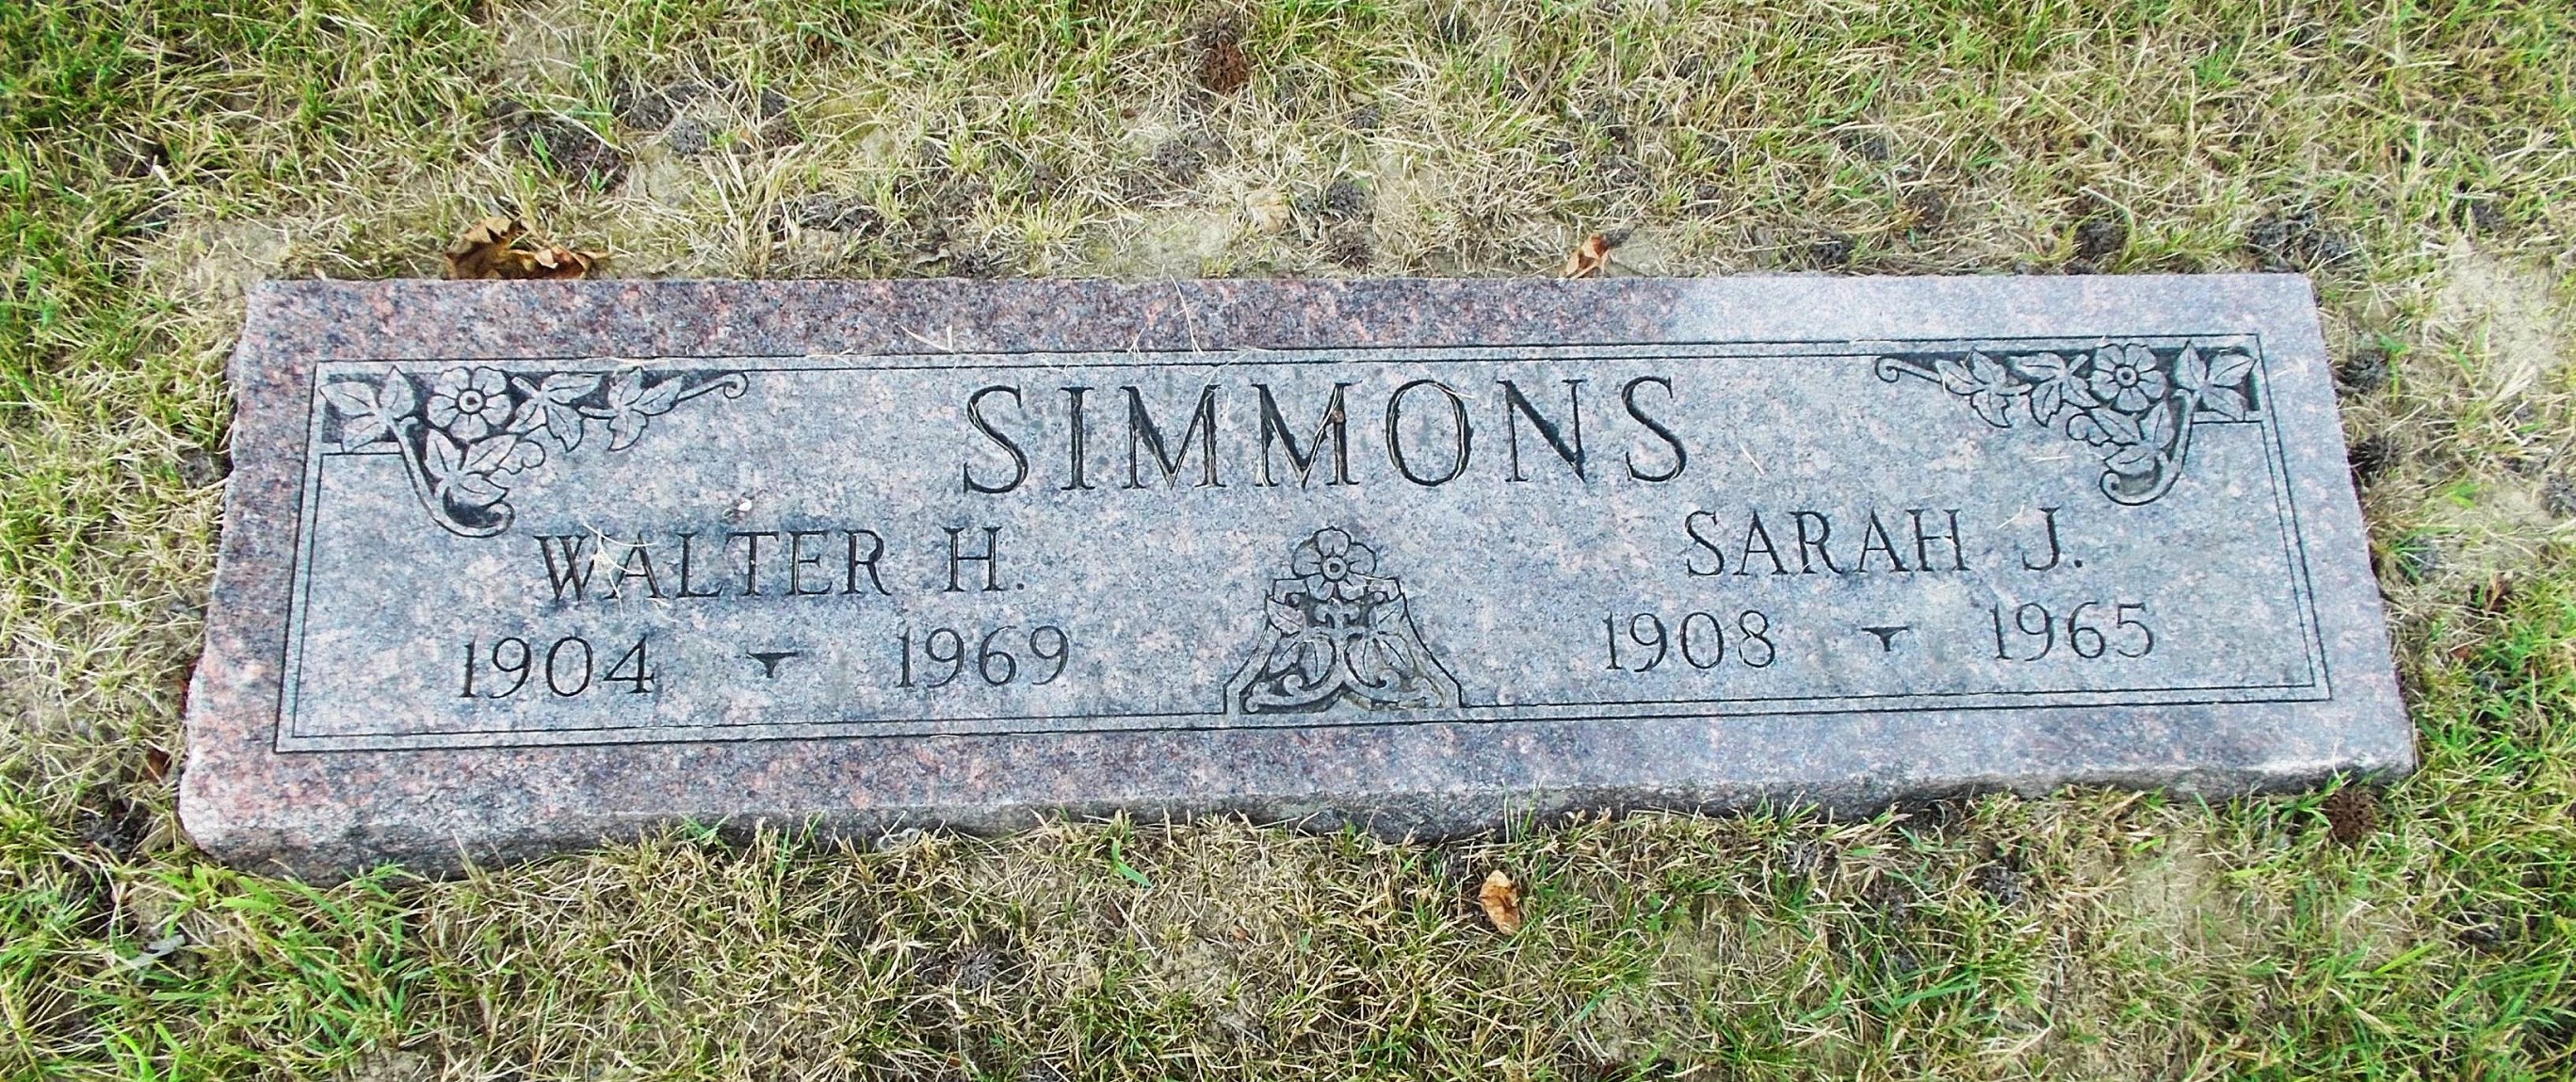 Sarah J Simmons